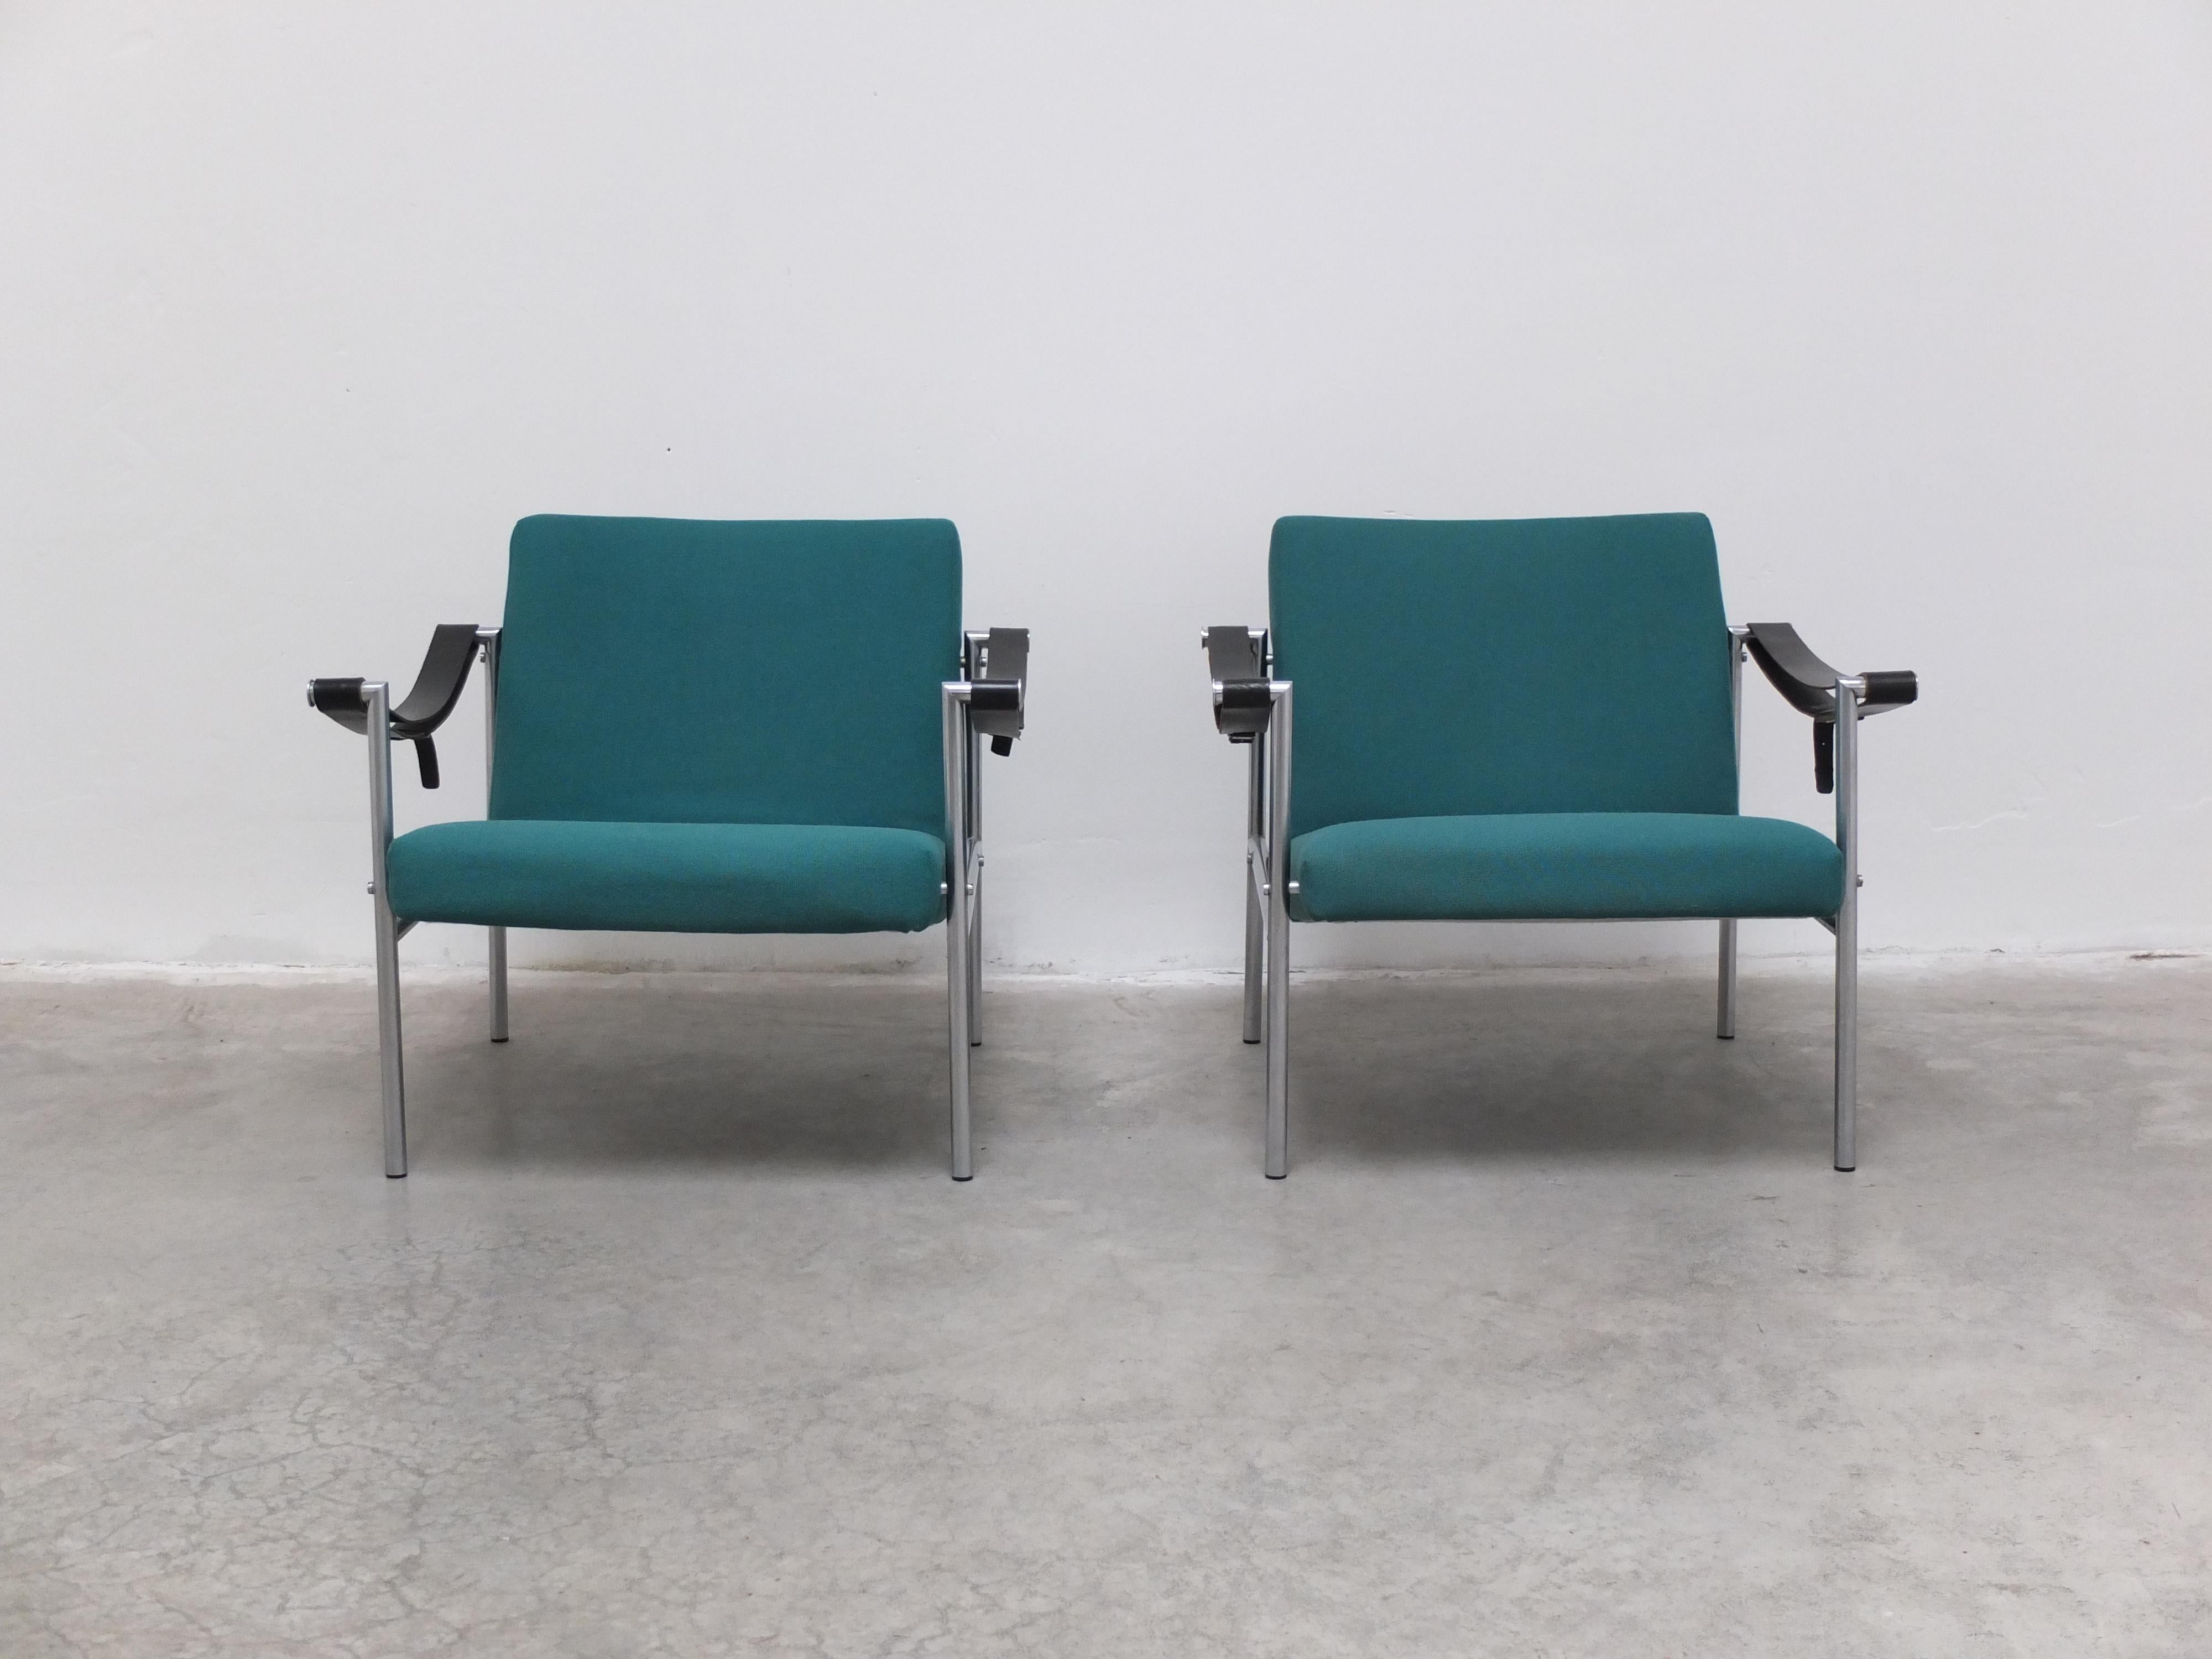 Schönes Paar Sessel Modell 'SZ08', entworfen von Martin Visser in Collaboration mit Dick Van Der Net für 't Spectrum im Jahr 1960. Dieses Modell wurde nur einige Jahre lang in den 1960er Jahren hergestellt und ist daher viel schwerer zu finden als